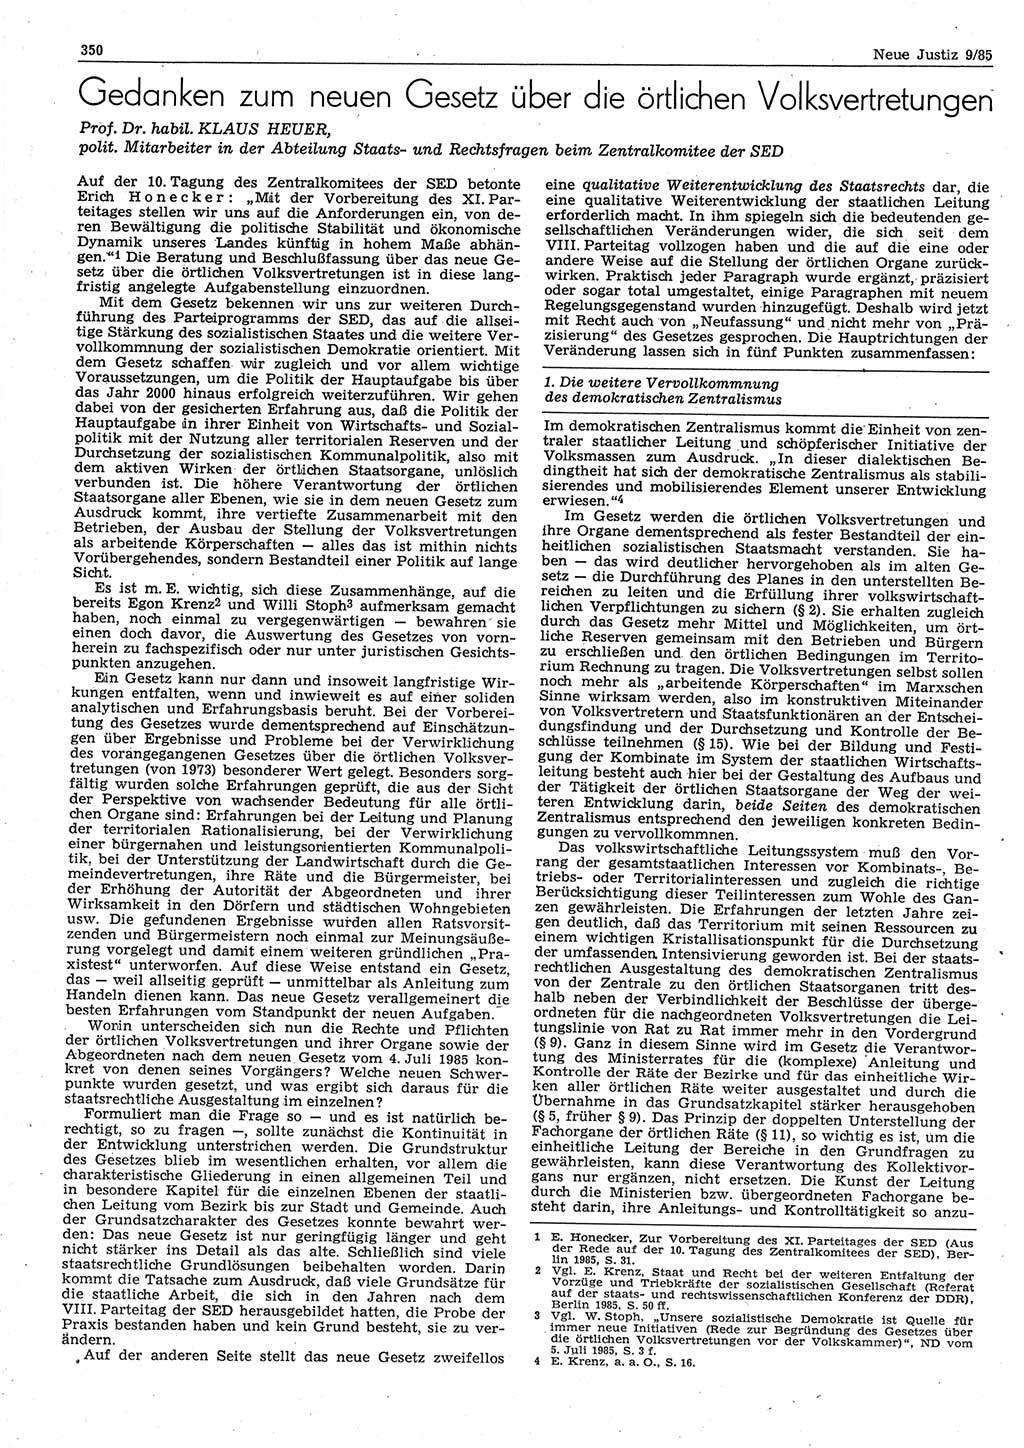 Neue Justiz (NJ), Zeitschrift für sozialistisches Recht und Gesetzlichkeit [Deutsche Demokratische Republik (DDR)], 39. Jahrgang 1985, Seite 350 (NJ DDR 1985, S. 350)